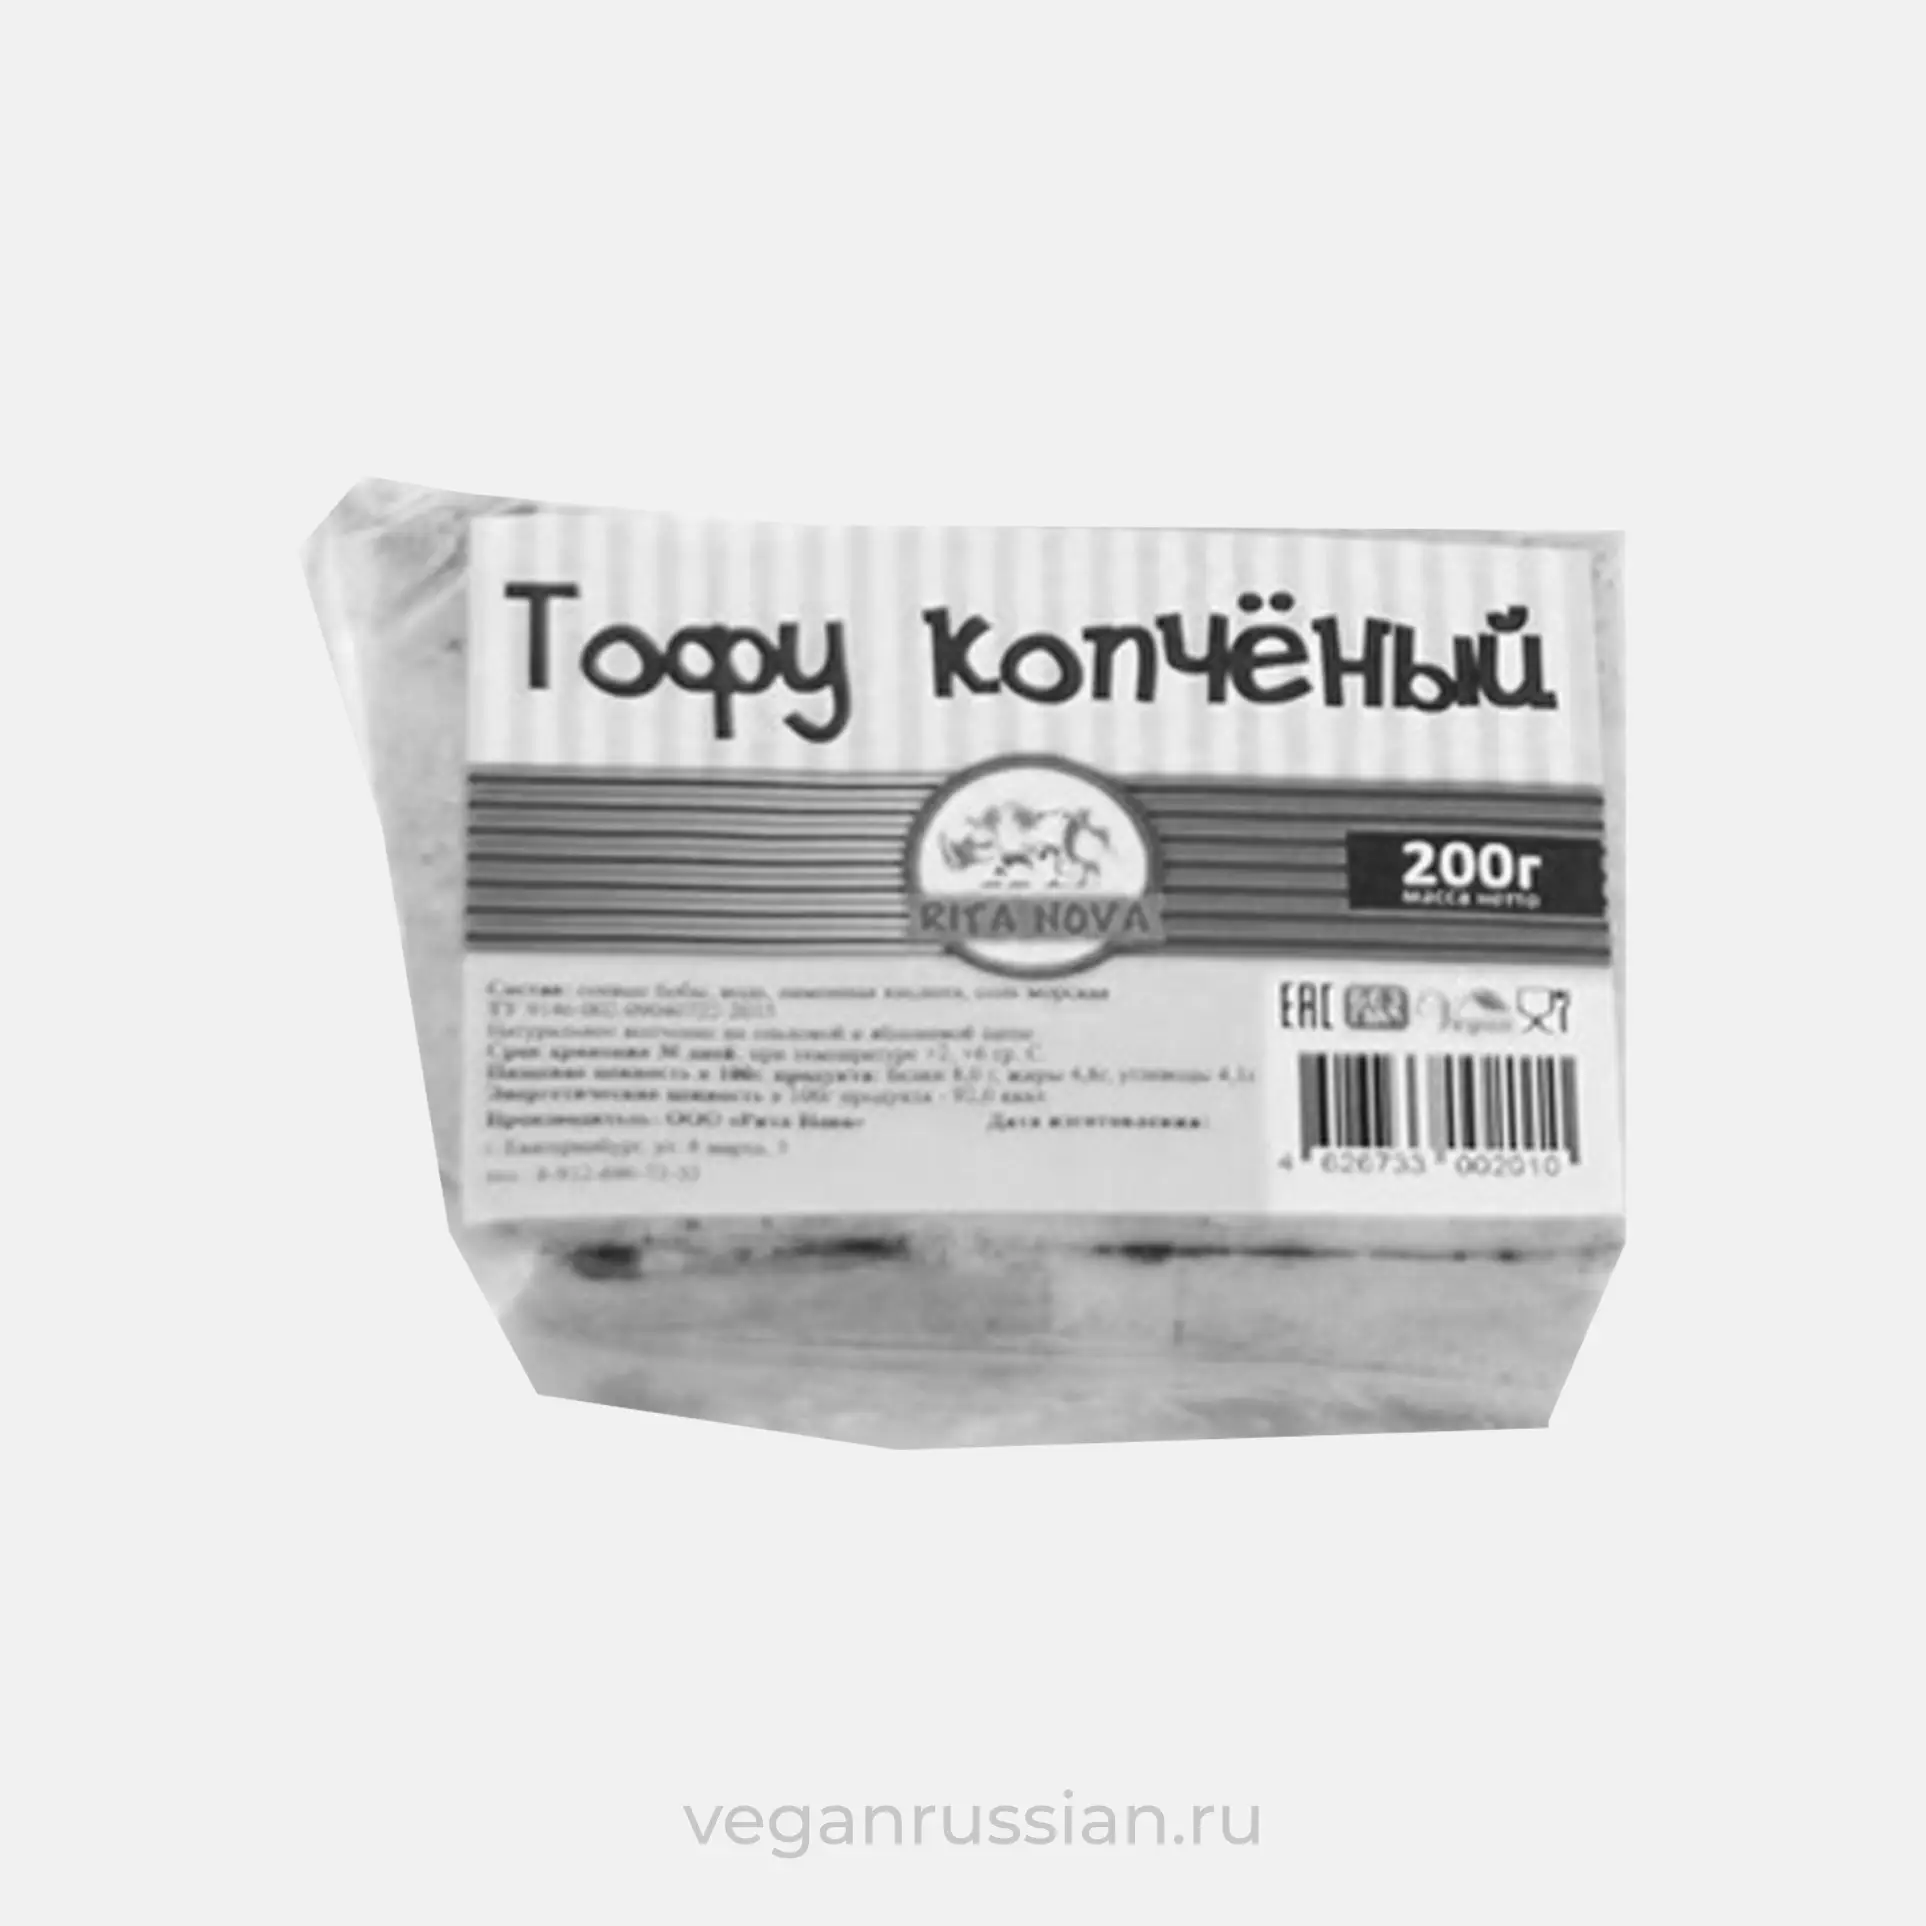 Архив: Тофу копченый Вегетеринбург 200 г